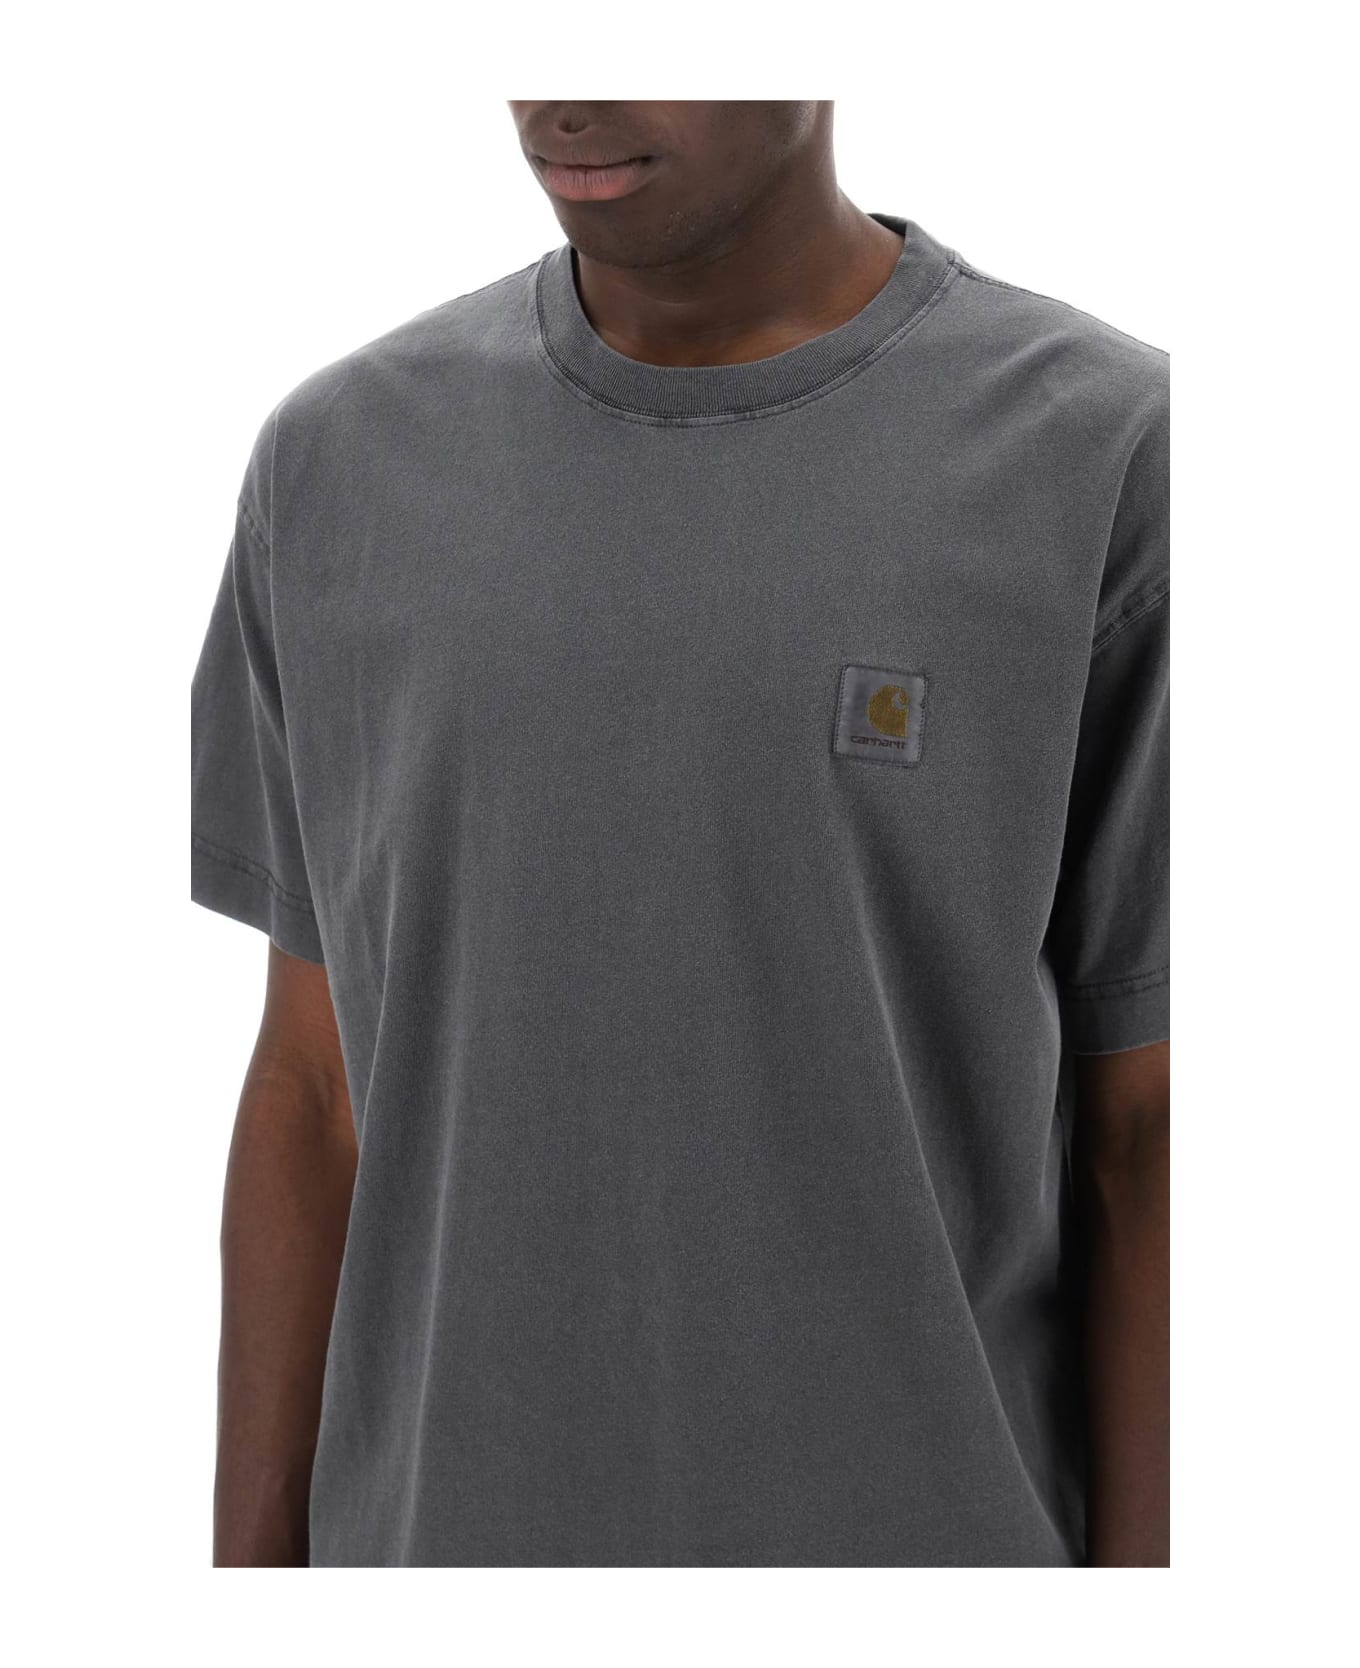 Carhartt Nelson T-shirt - Charcoal シャツ